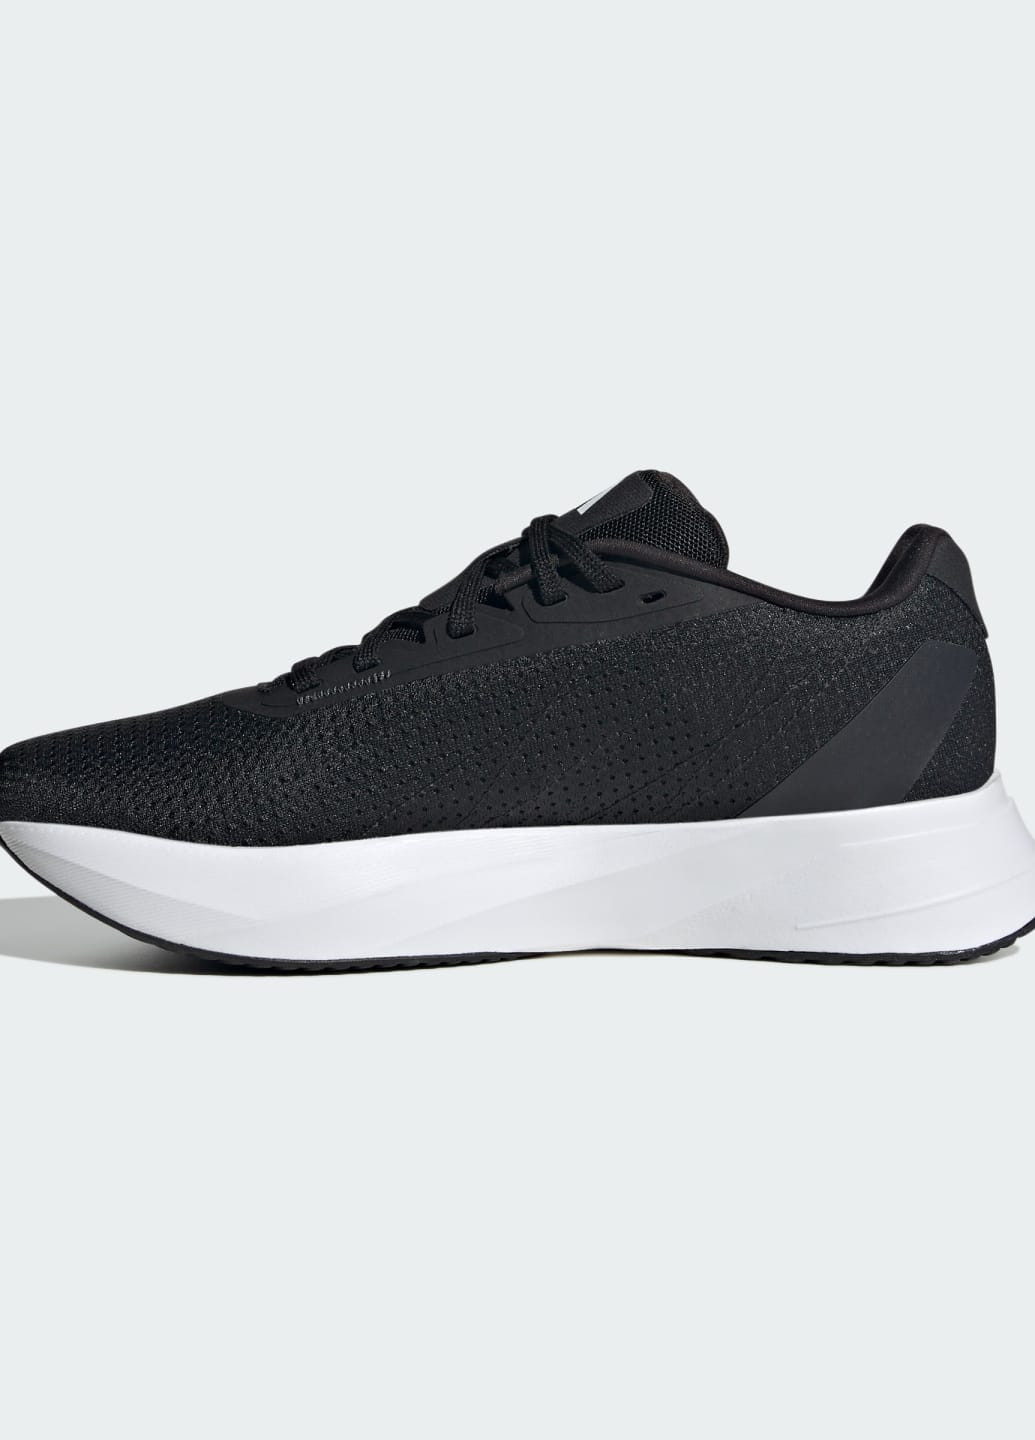 Чорні всесезонні кросівки для бігу duramo sl adidas